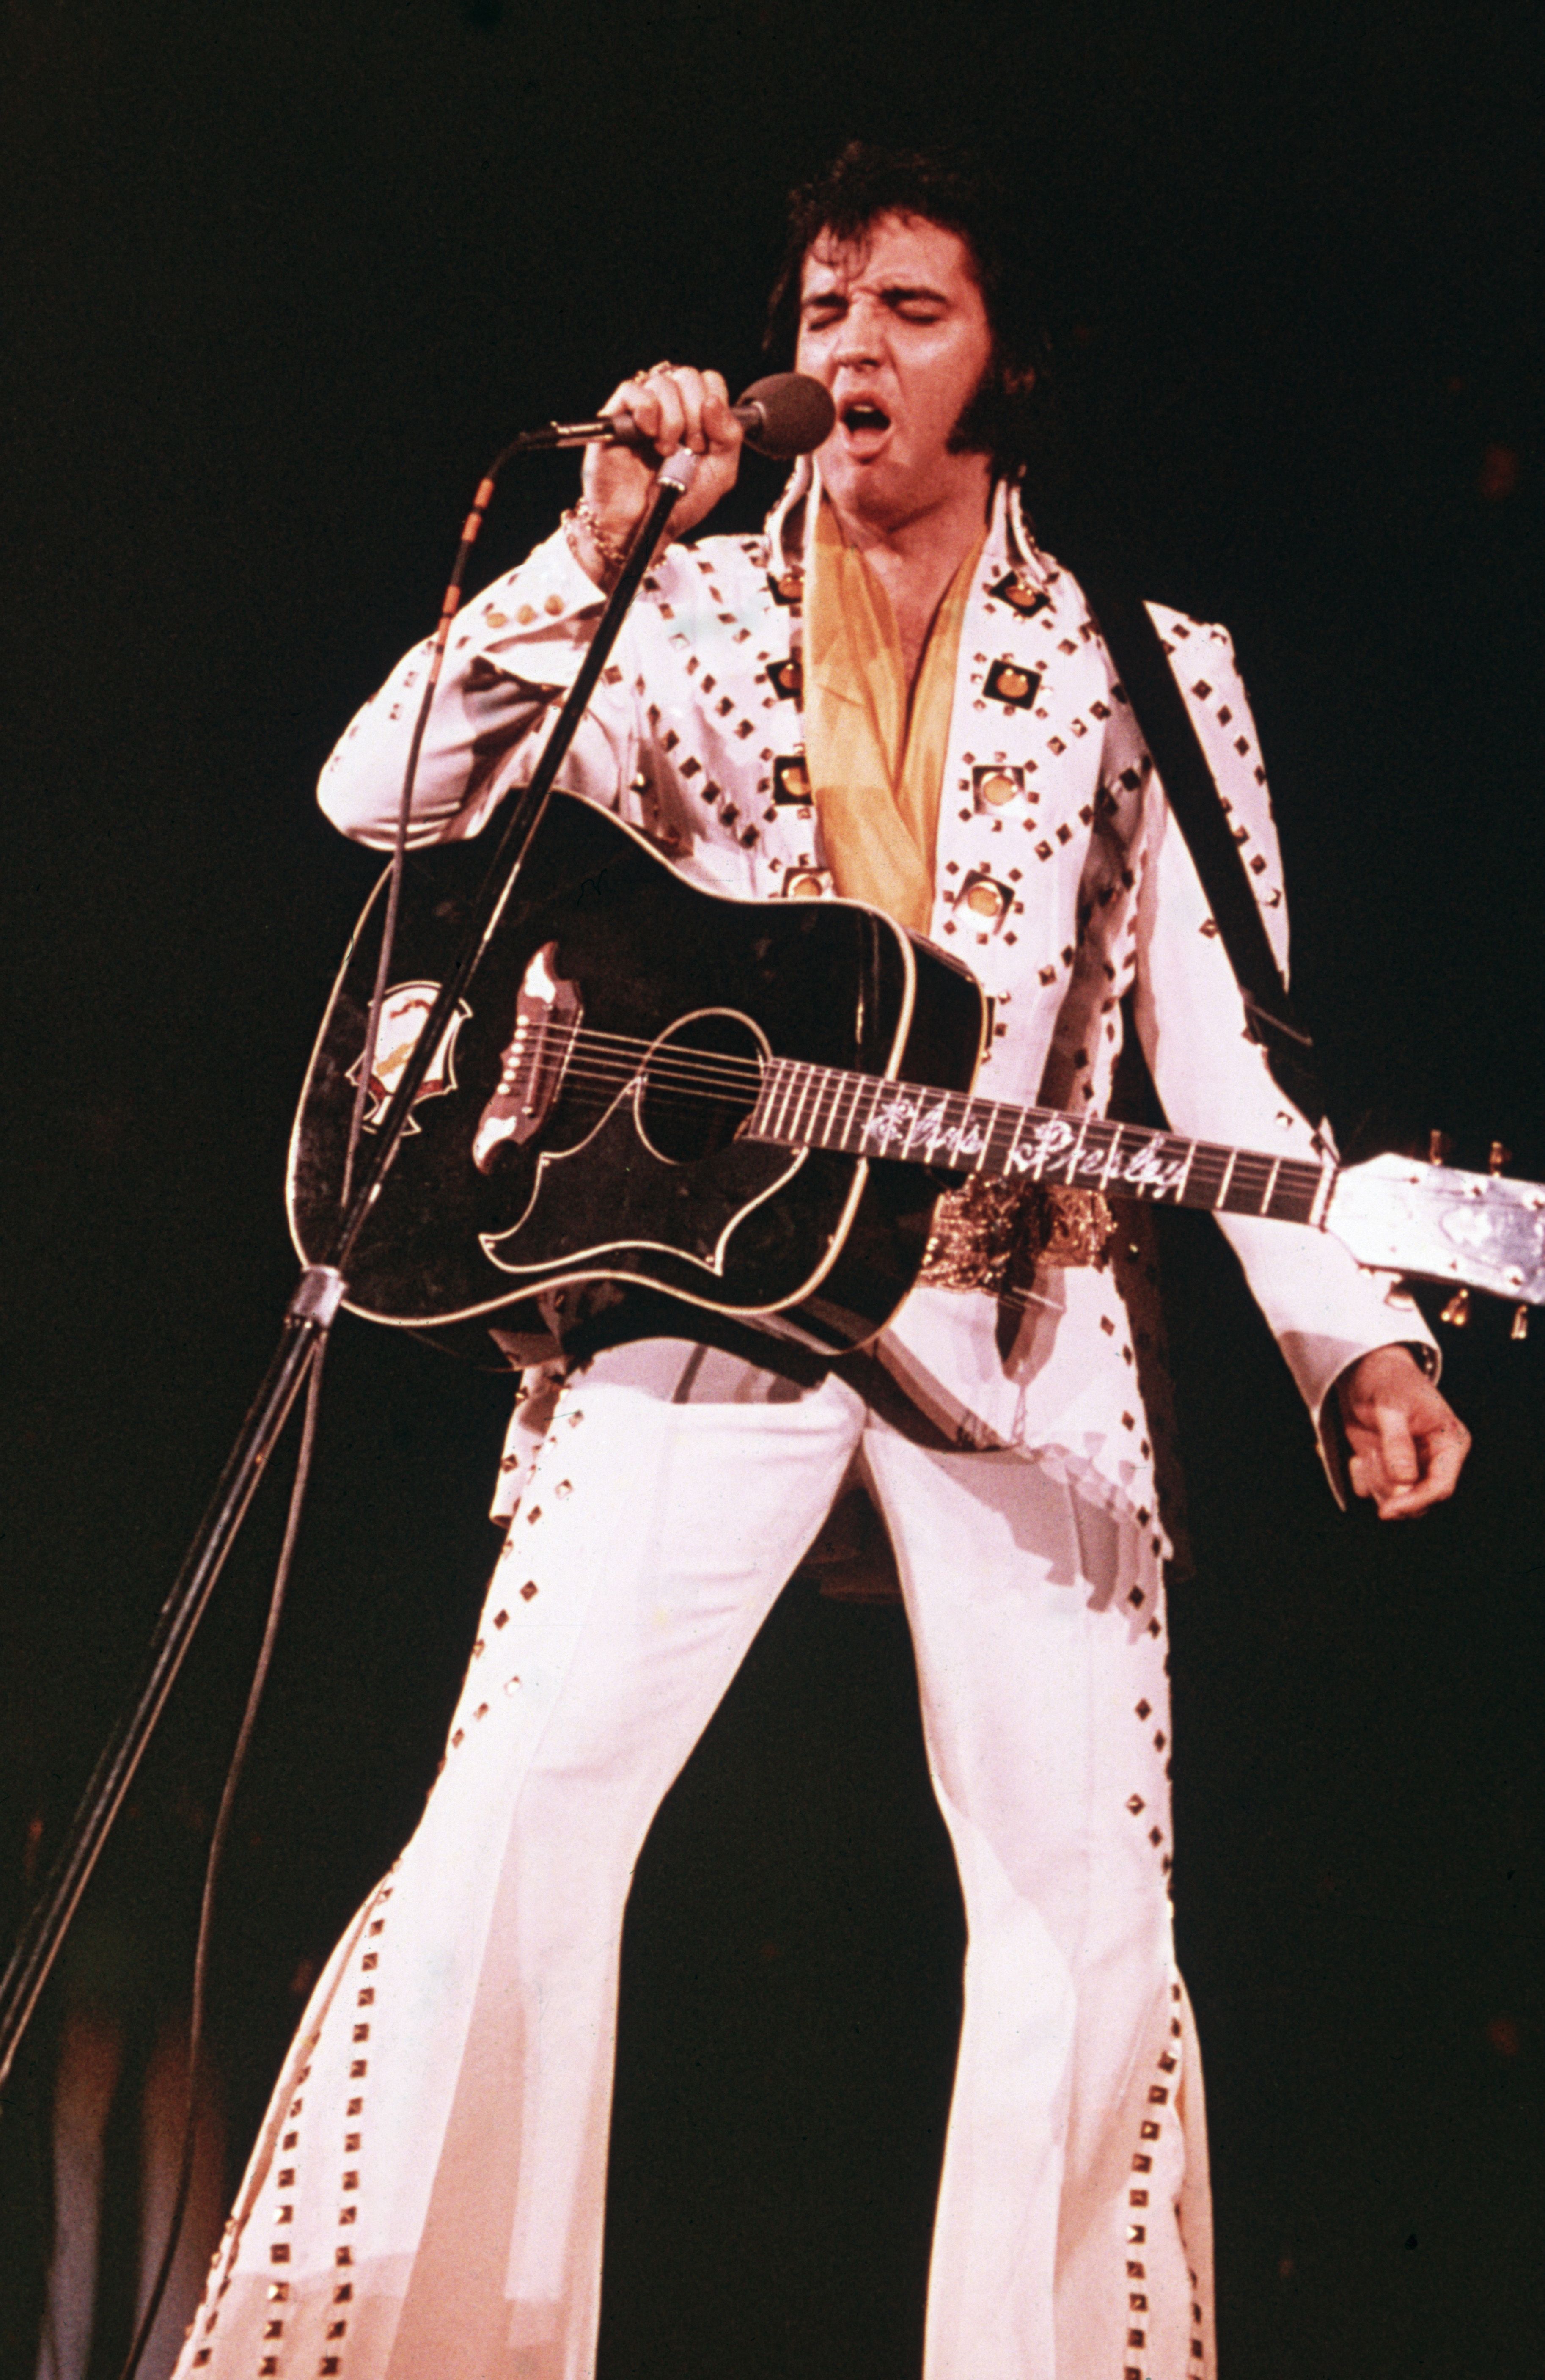 Elvis Presley returns in a big way in Las Vegas' iconic 'Legends in  Concert', Kats, Entertainment